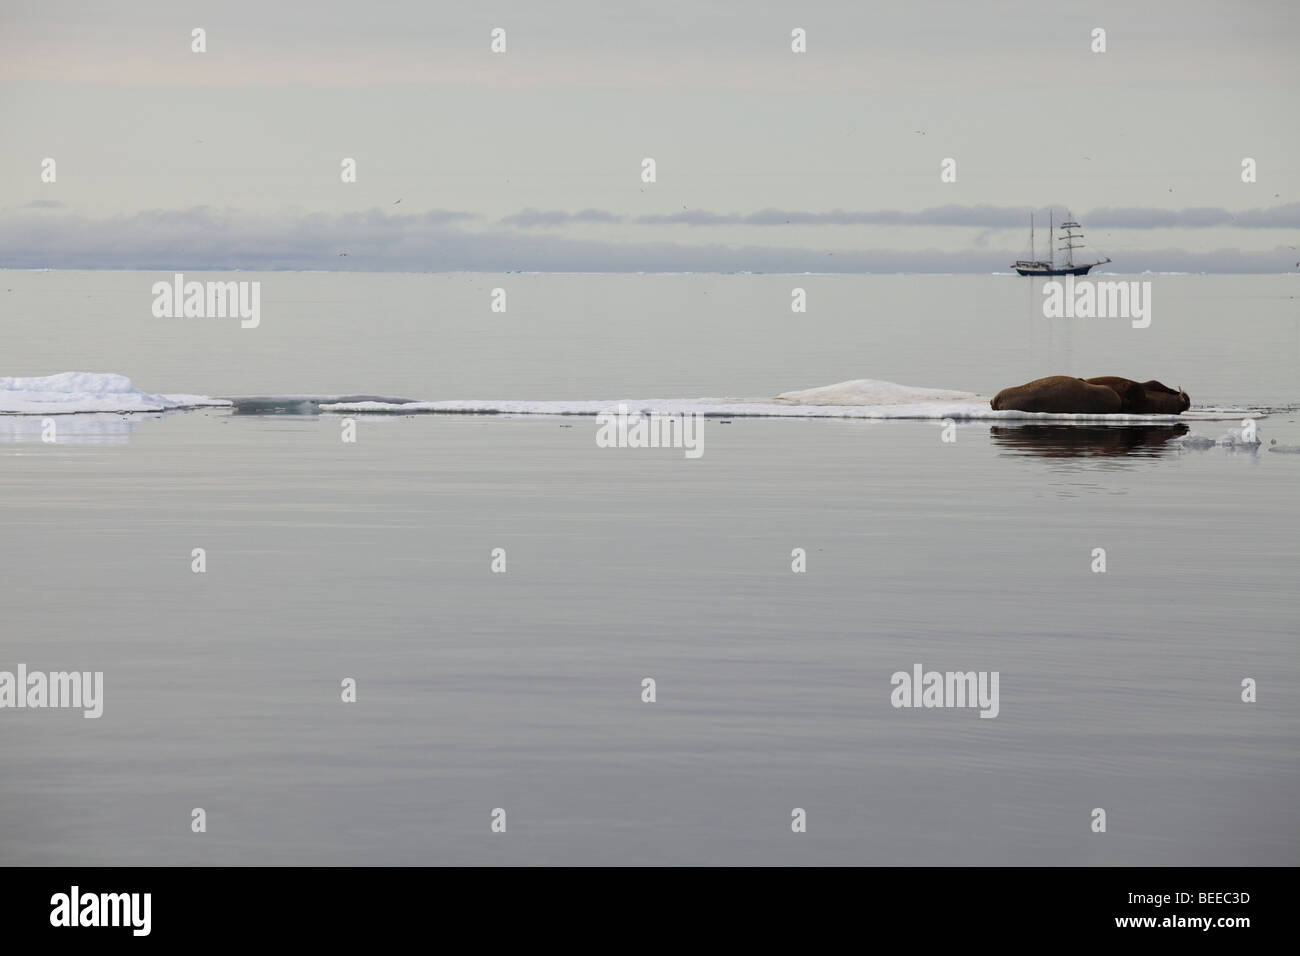 Tricheco in appoggio sulla banchisa nell'Oceano Artico a nord delle isole Svalbard con nave a vela in background Foto Stock